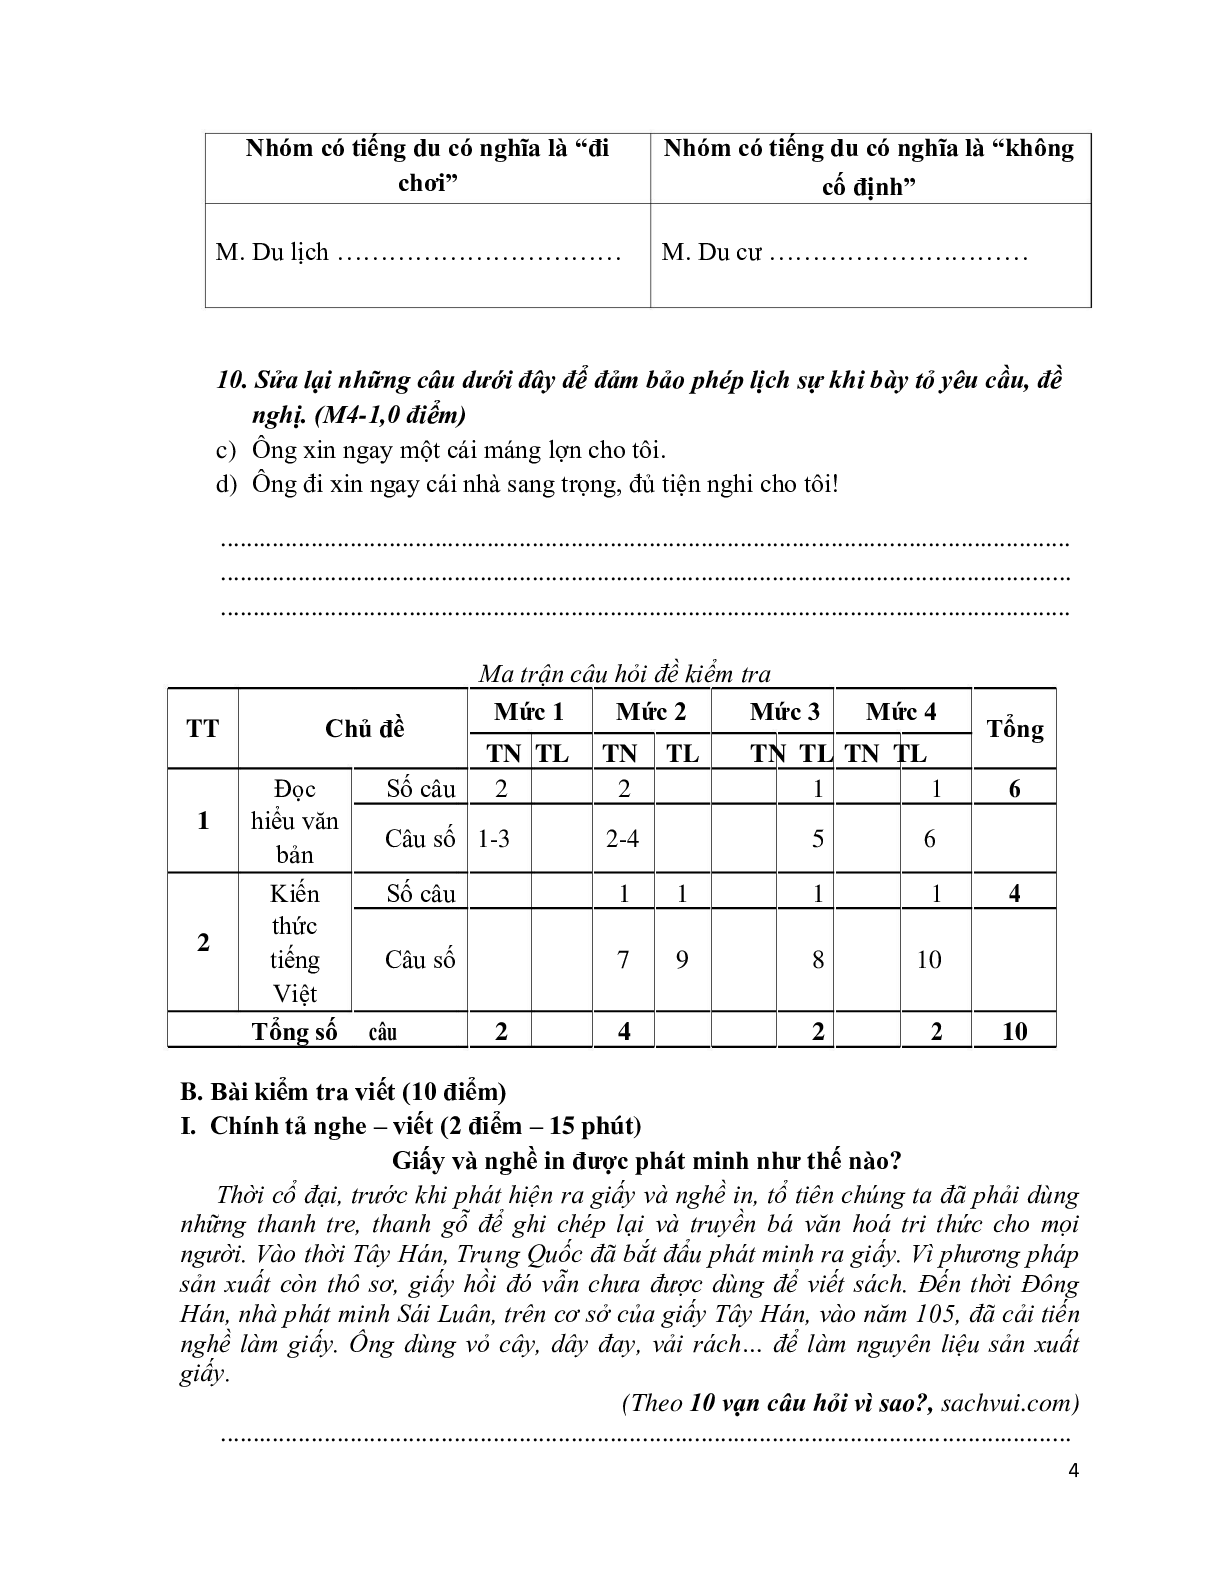 Đề kiểm tra cuối học kỳ 2 môn Tiếng Việt  lớp 4 (trang 4)